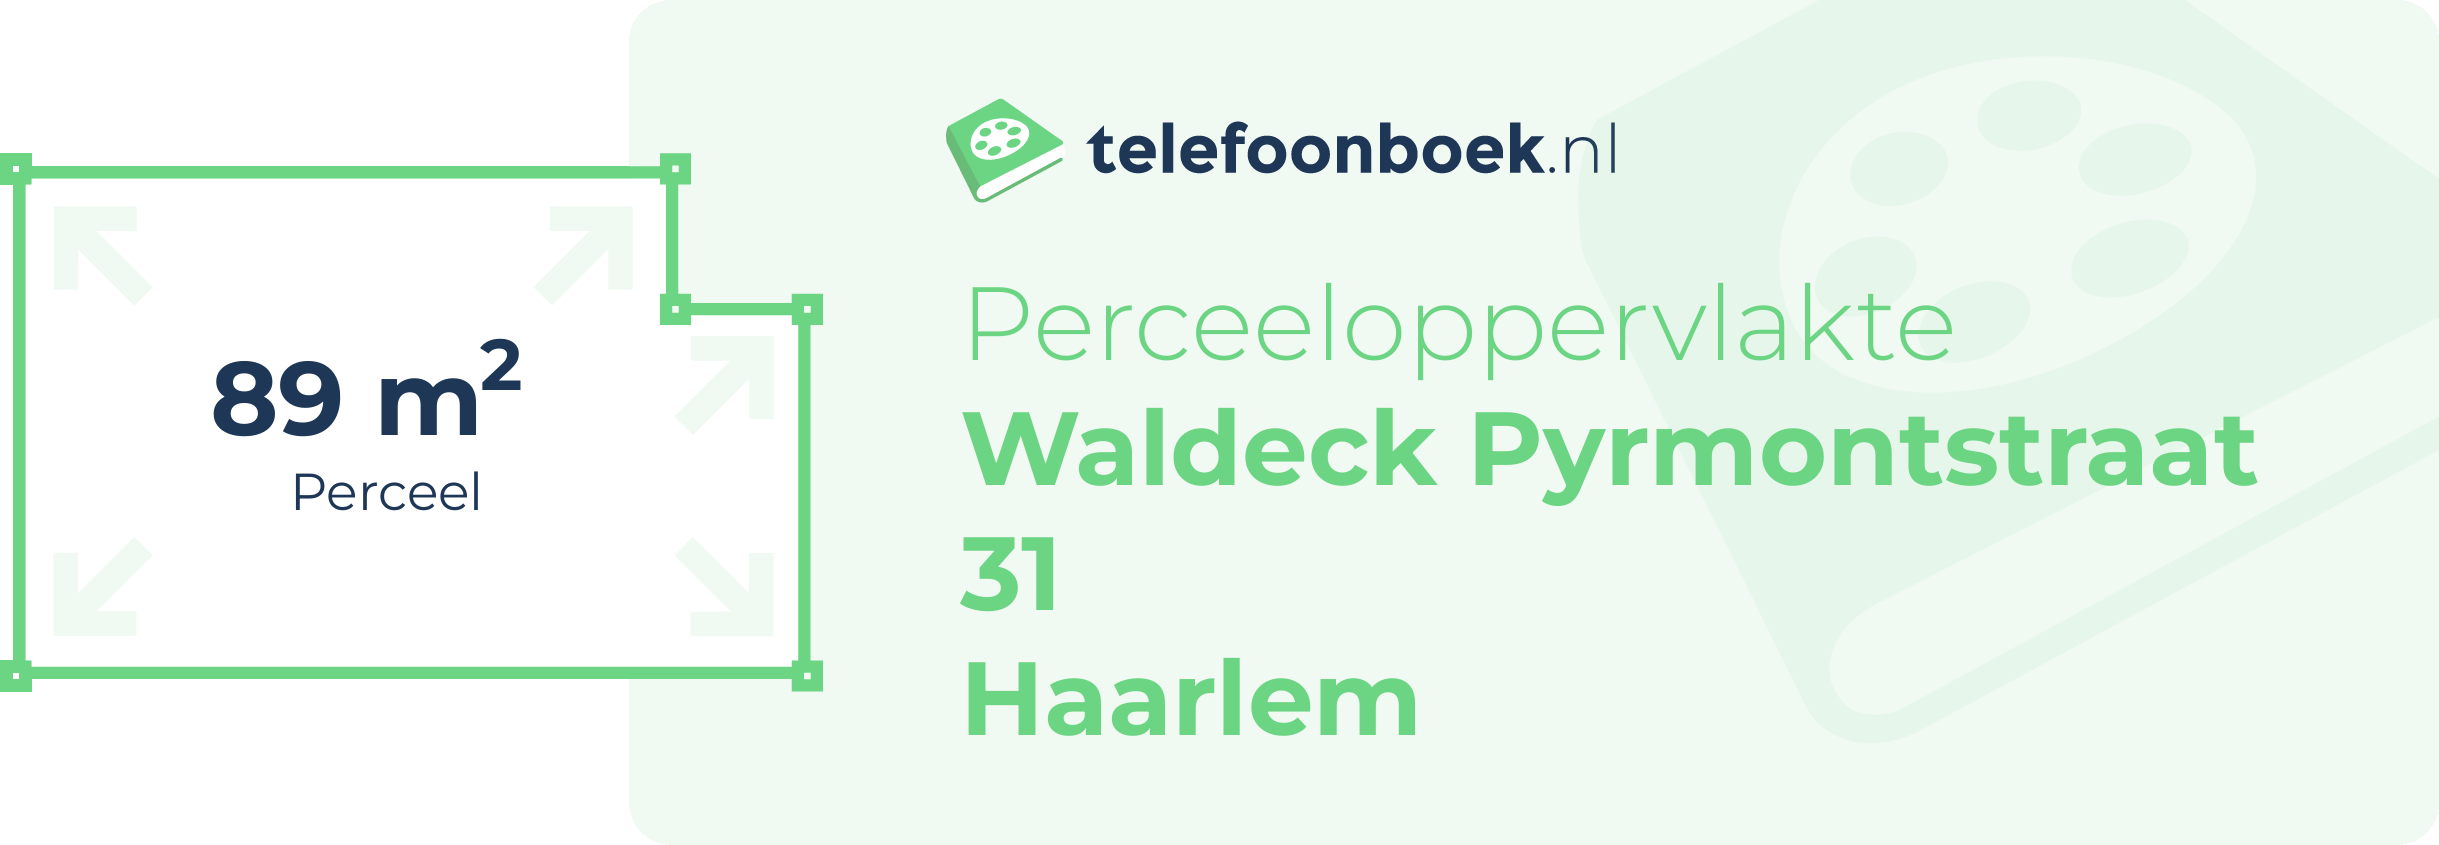 Perceeloppervlakte Waldeck Pyrmontstraat 31 Haarlem